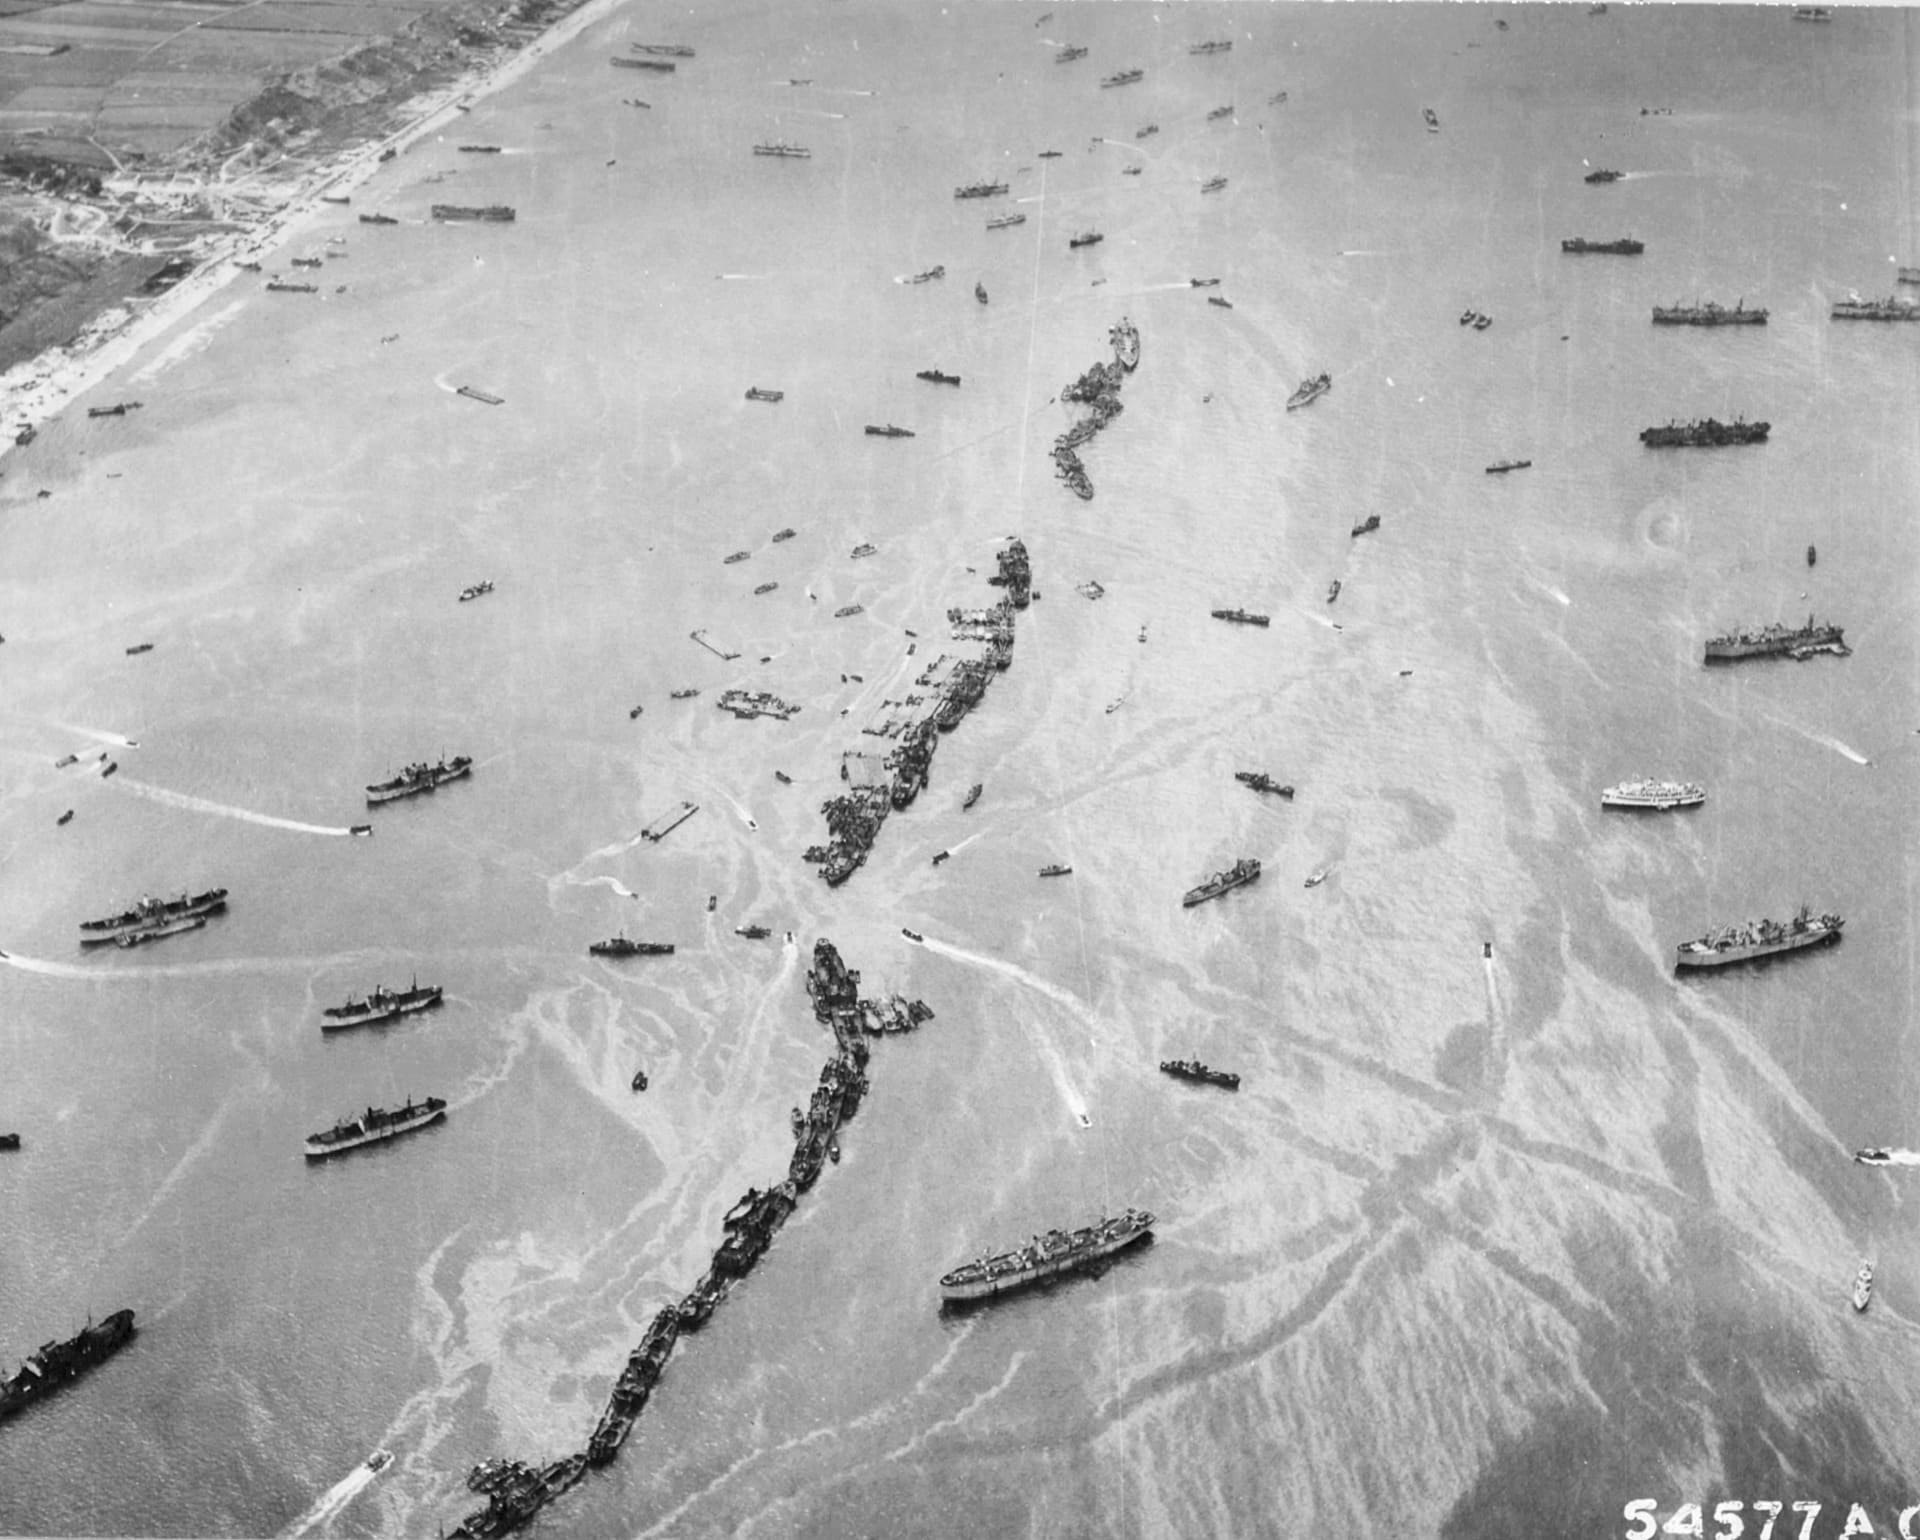 Americké lodě Liberty seřazené jedna za druhou tvoří provizorní vlnolam u pláže Omaha. je několik dnů po invazi a Spojencům zoufale chybí dobrý přístav